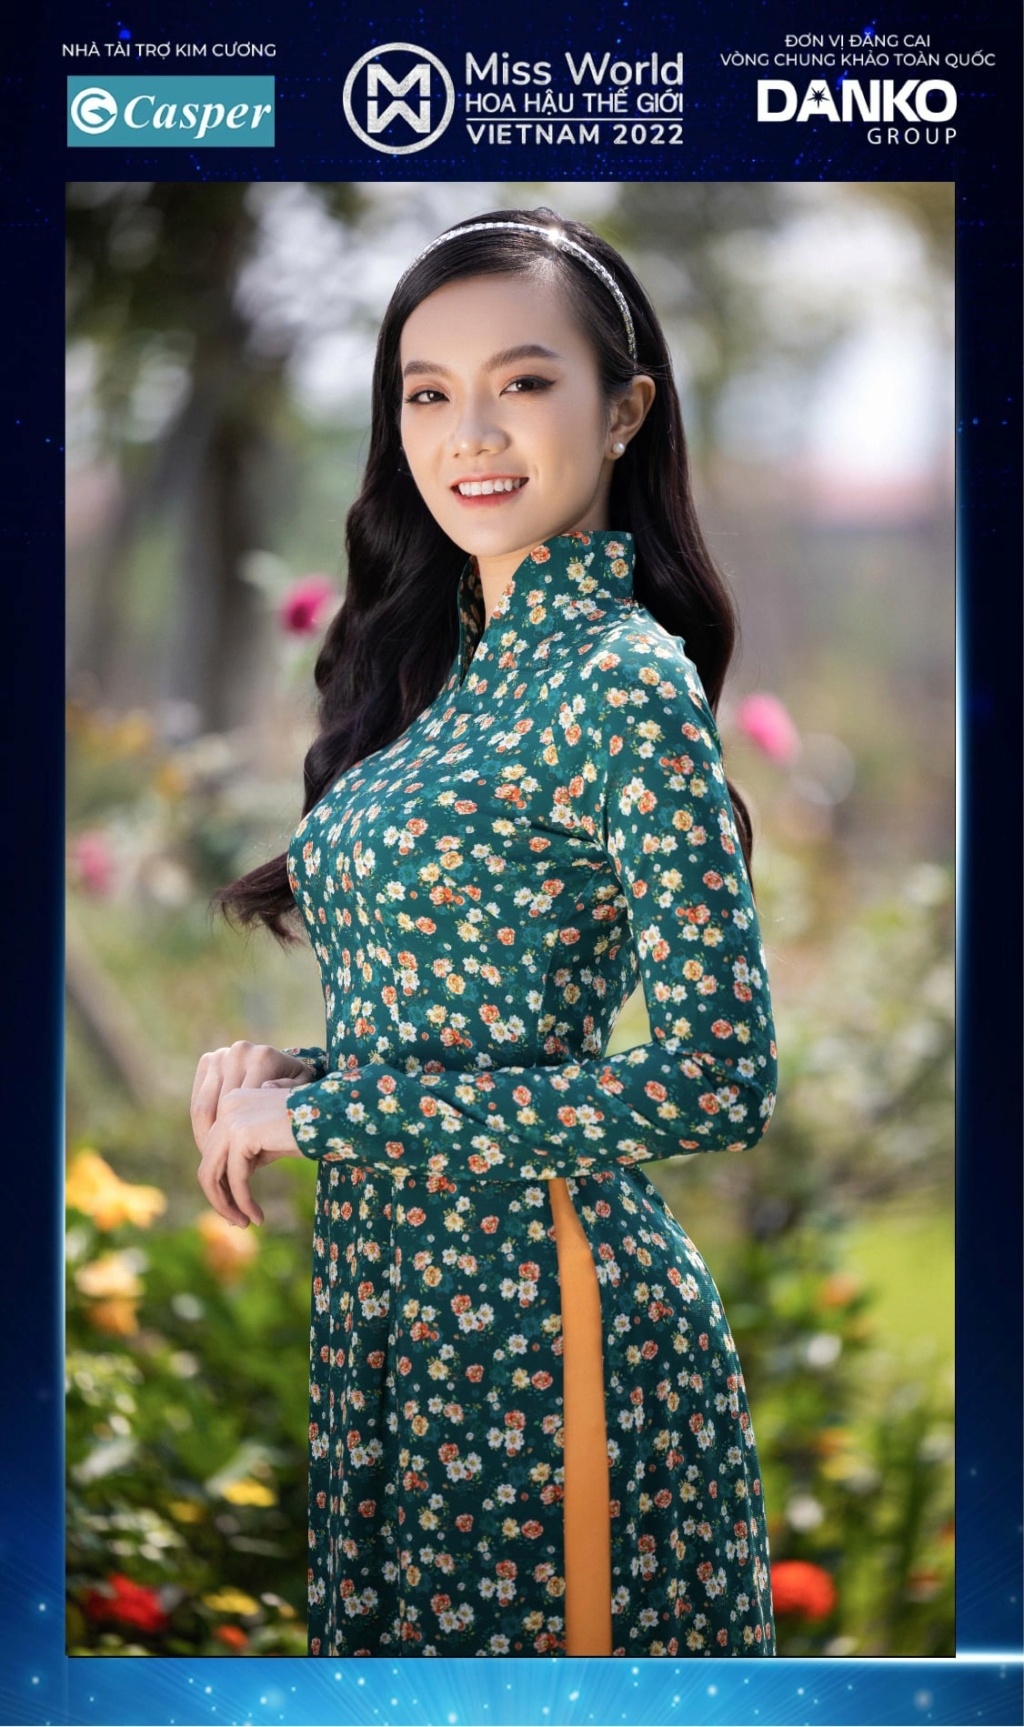 Miss World Vietnam 2022 27916310